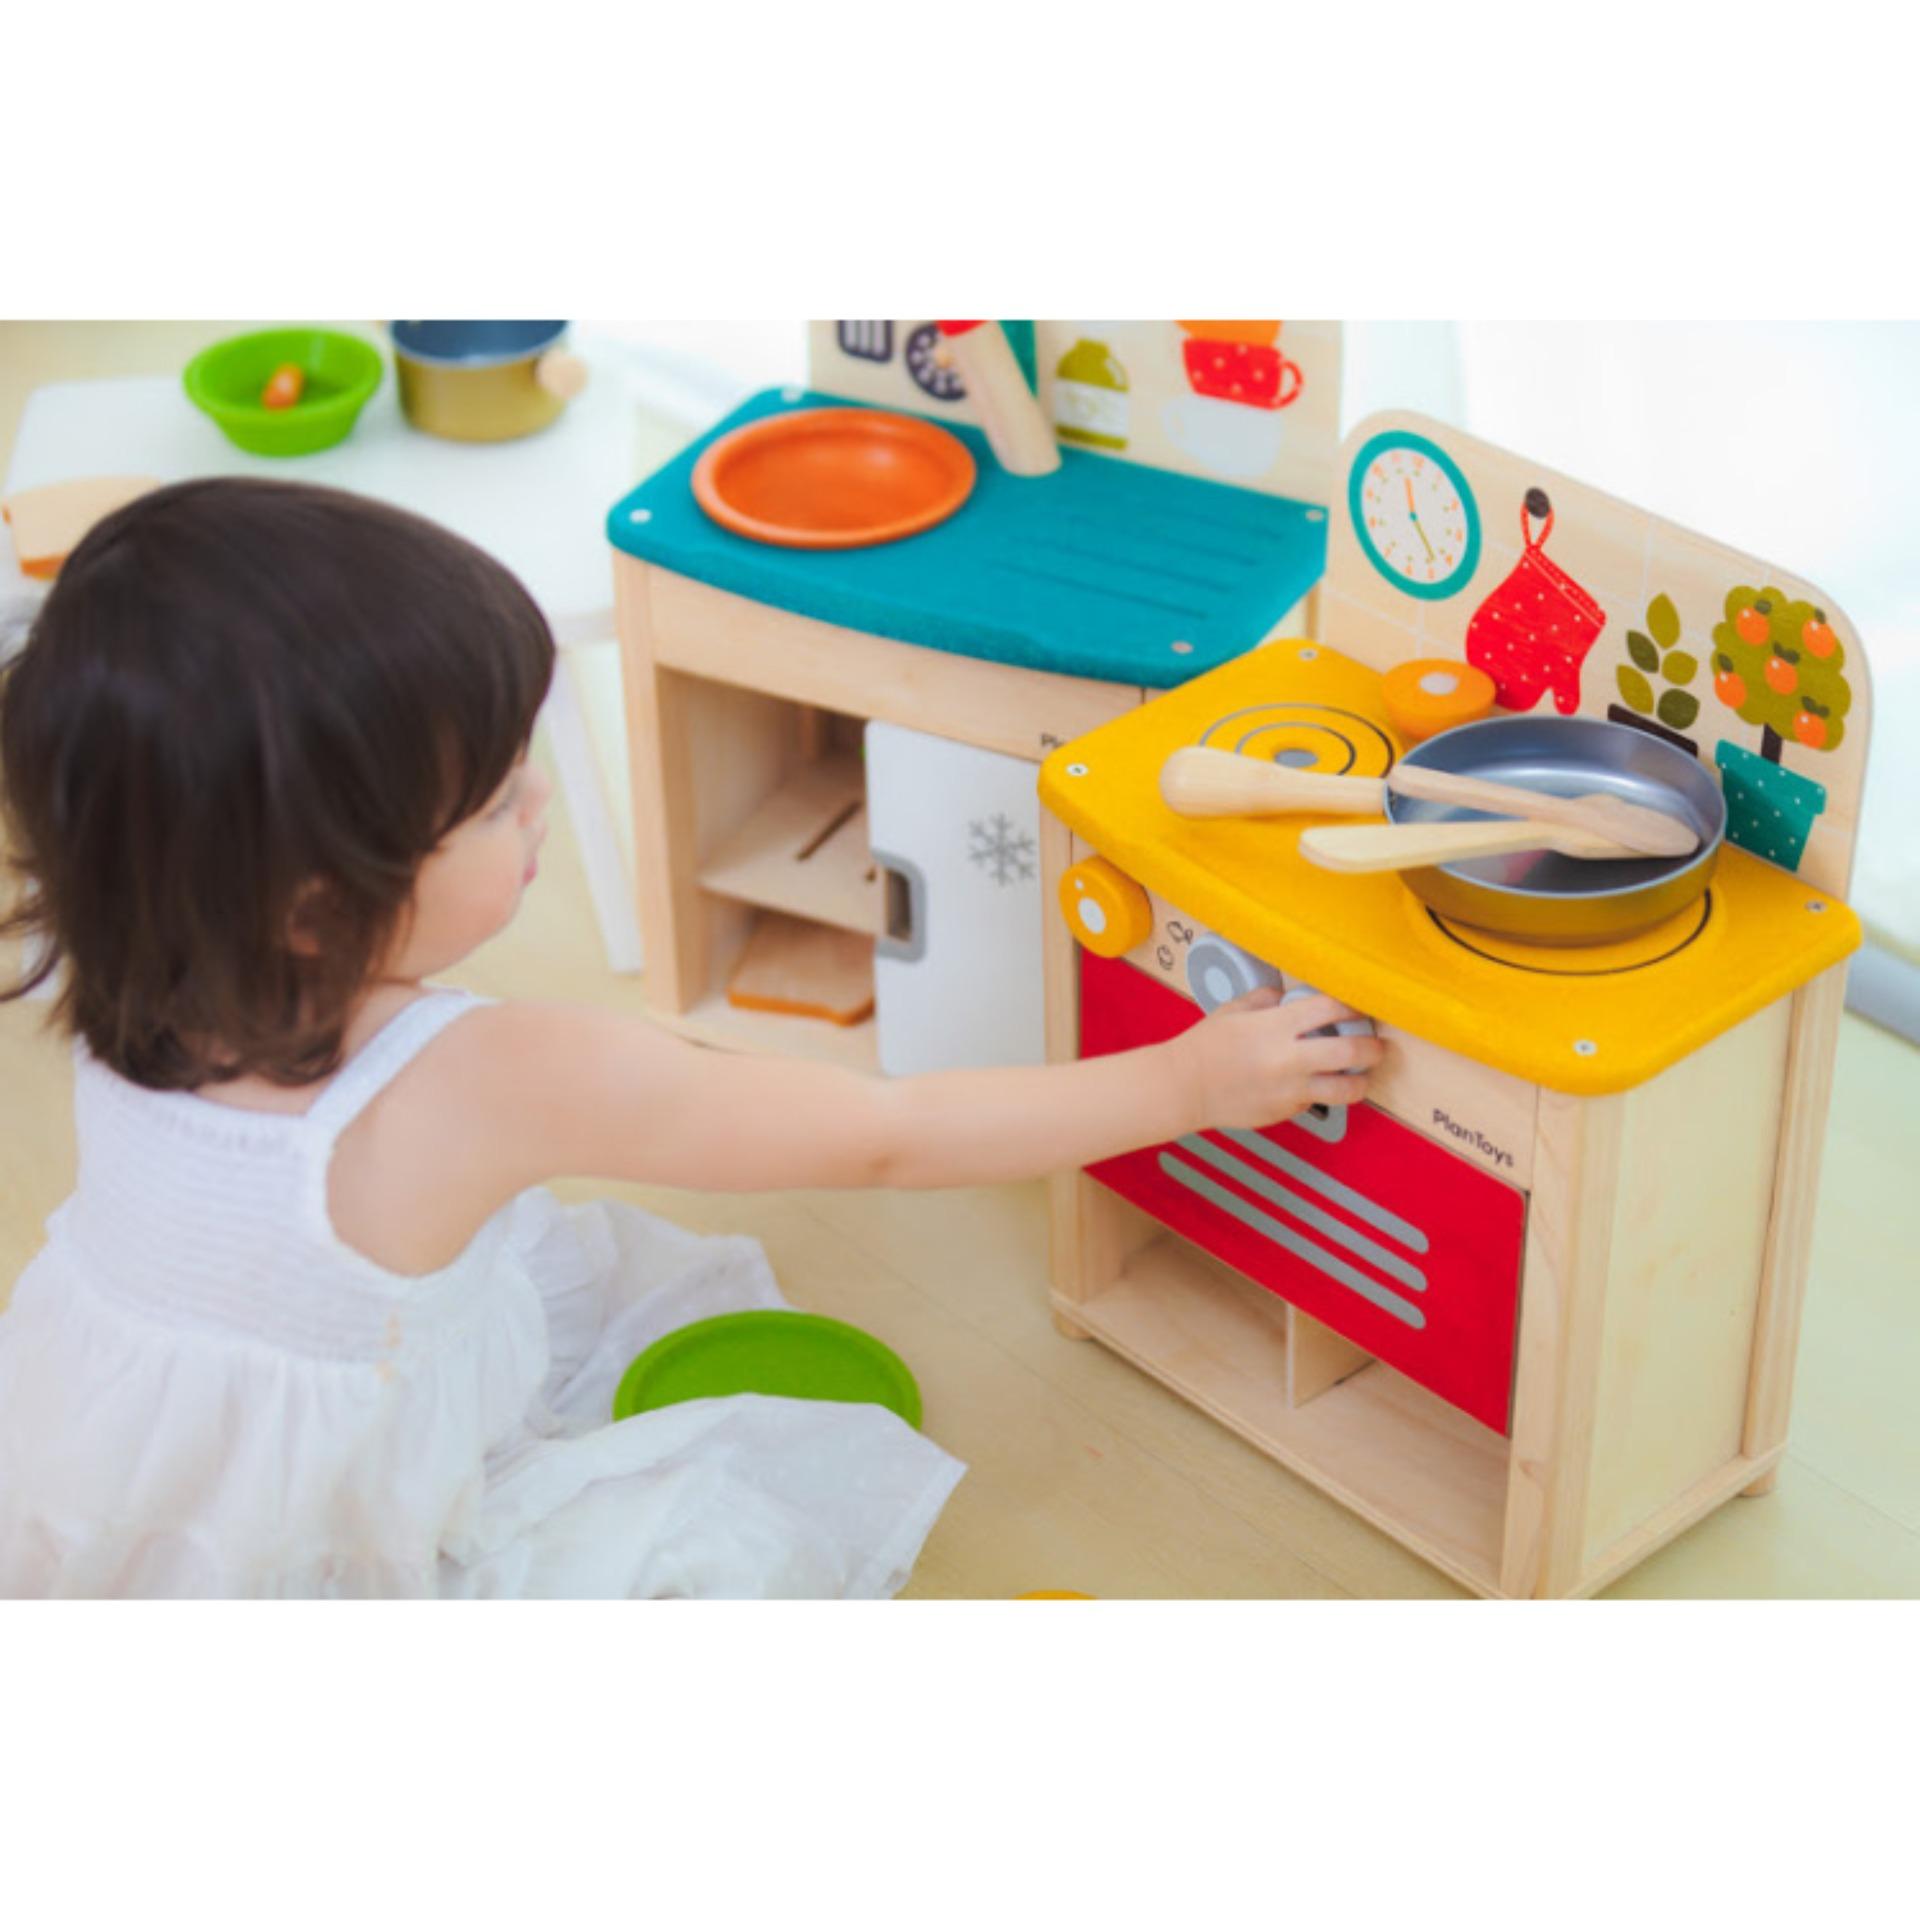 PlanToys ของเล่นไม้ Kitchen Set ชุดครัวมินิ เครื่องครัว เหมาะสำหรับเด็กอายุ 3 ขวบ ขึ้นไป